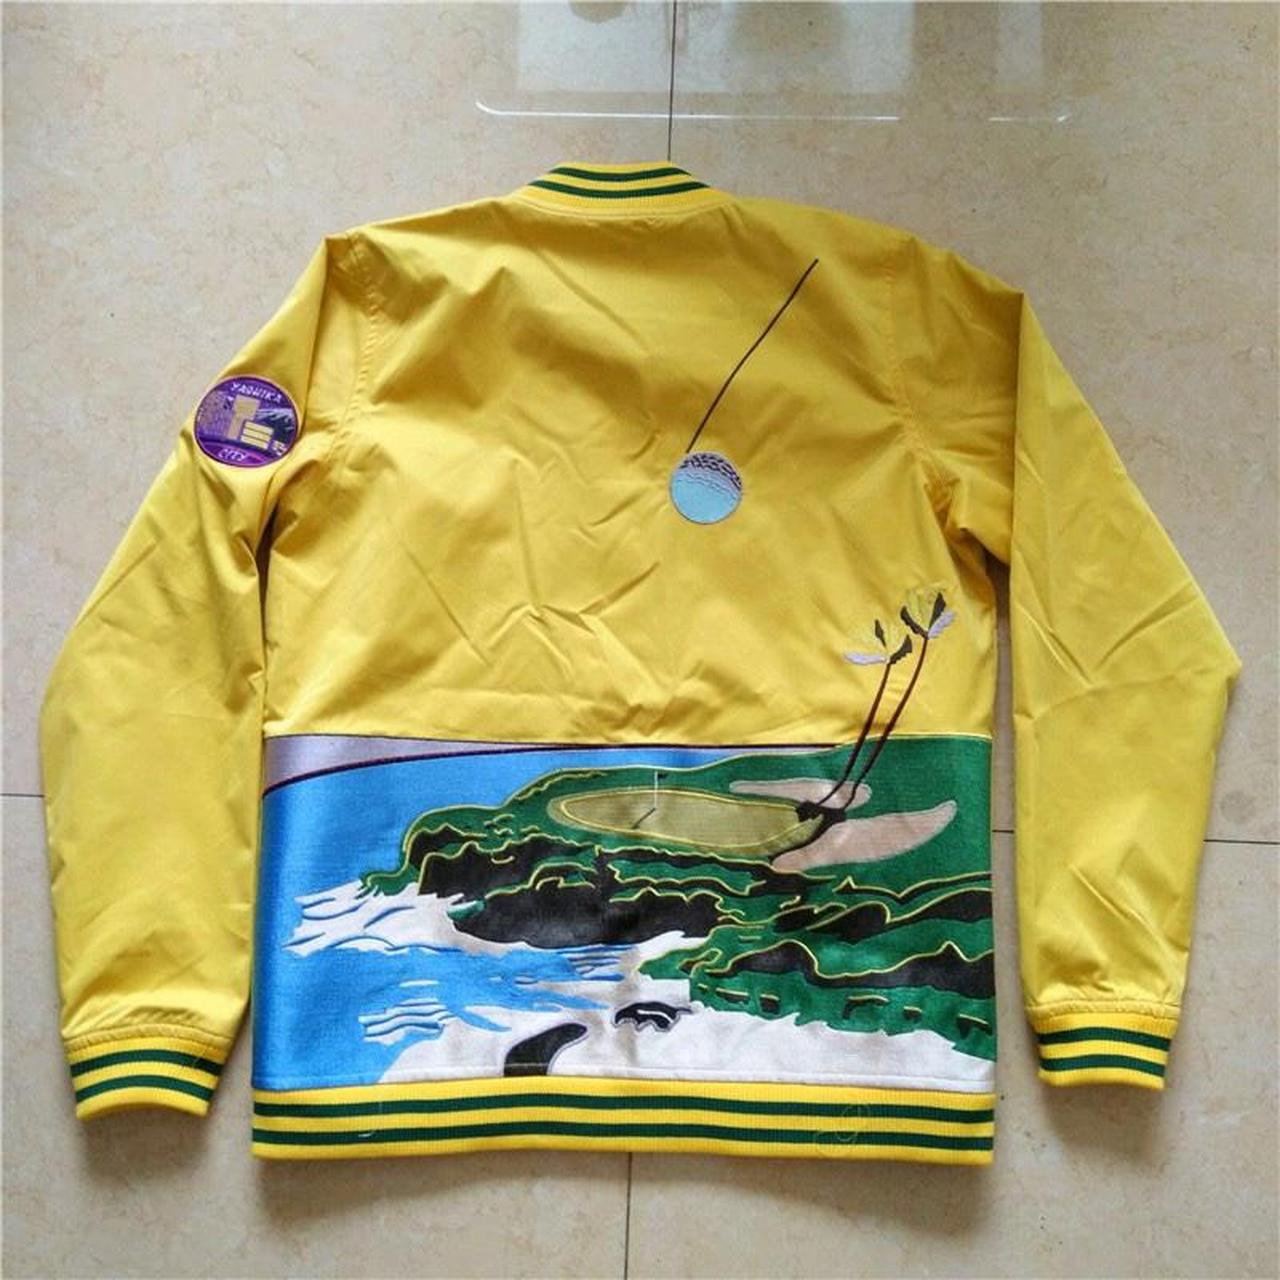 Yashica Women's Yellow and Purple Jacket (4)